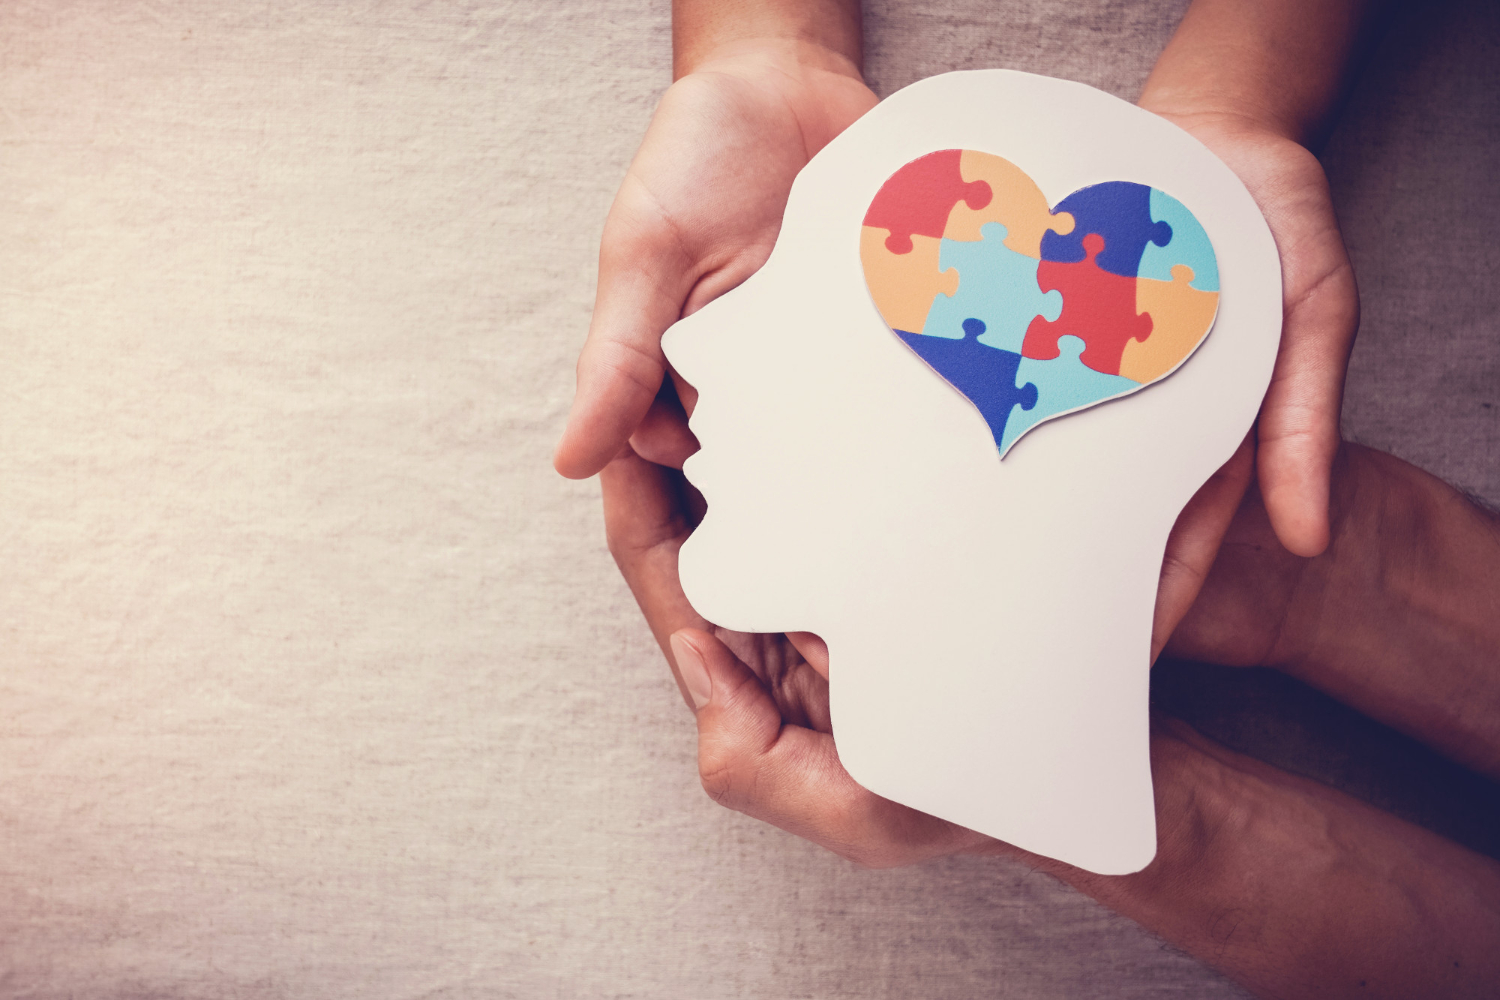 puzzle jigsaw heart brain mental health